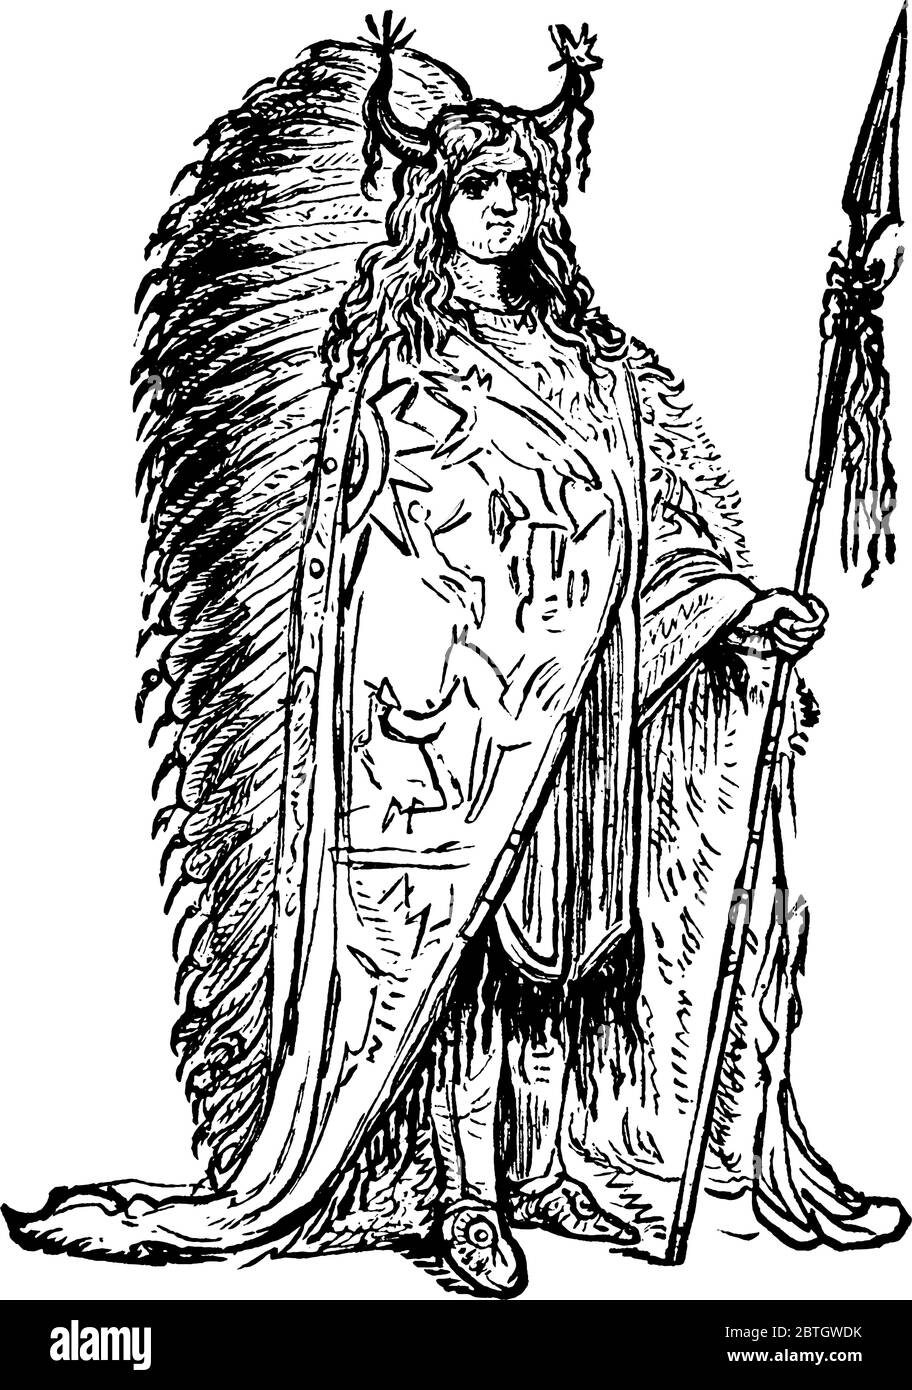 La foto raffigura un capo Sioux. I Sioux sono una Confederazione di diverse tribù che parlano tre dialetti diversi, il Lakota, il Dakota e Nakota, v Illustrazione Vettoriale